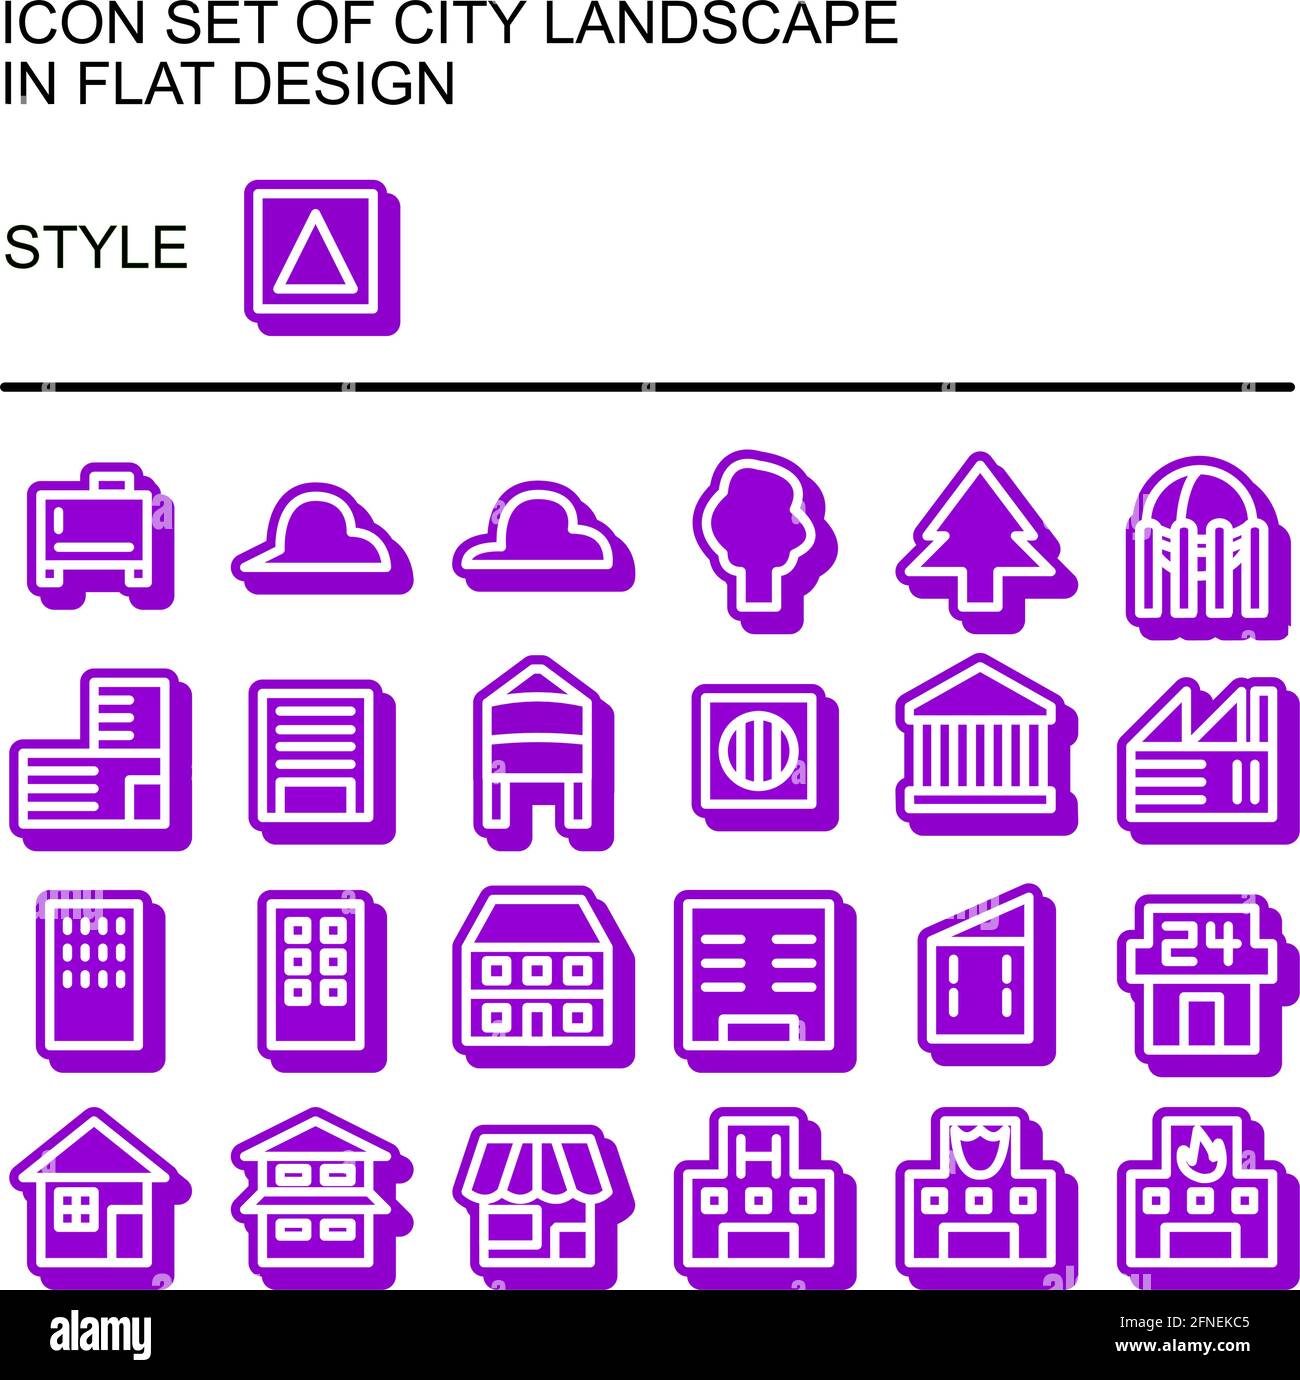 Symbol für die Stadtlandschaft in flachem Design mit weißen Linien, violetten Füllungen und violetten Umrissen. Stock Vektor